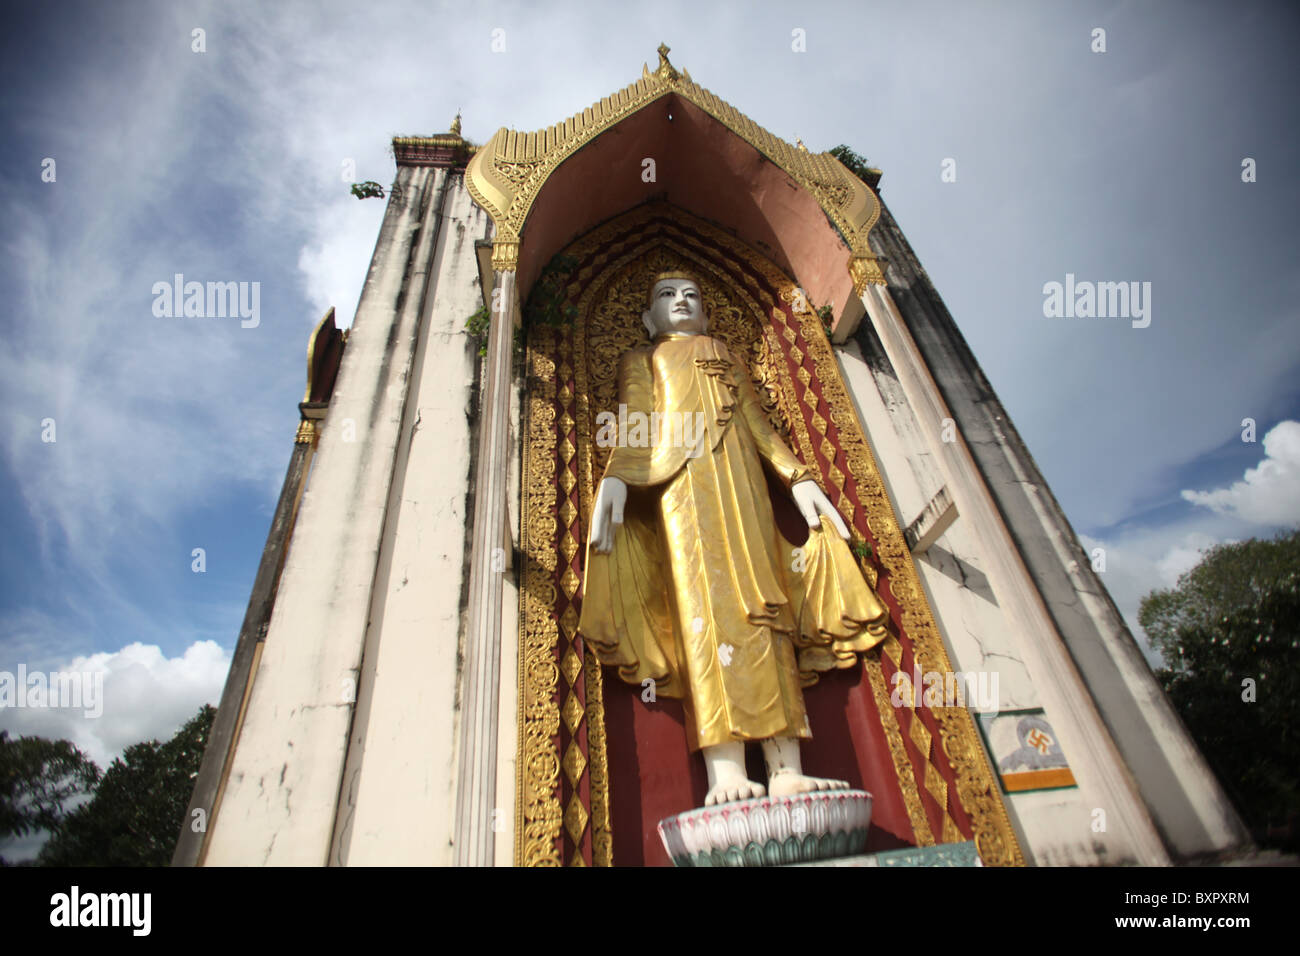 A Buddha statue image in Bago, Myanmar or Burma in Asia. Stock Photo